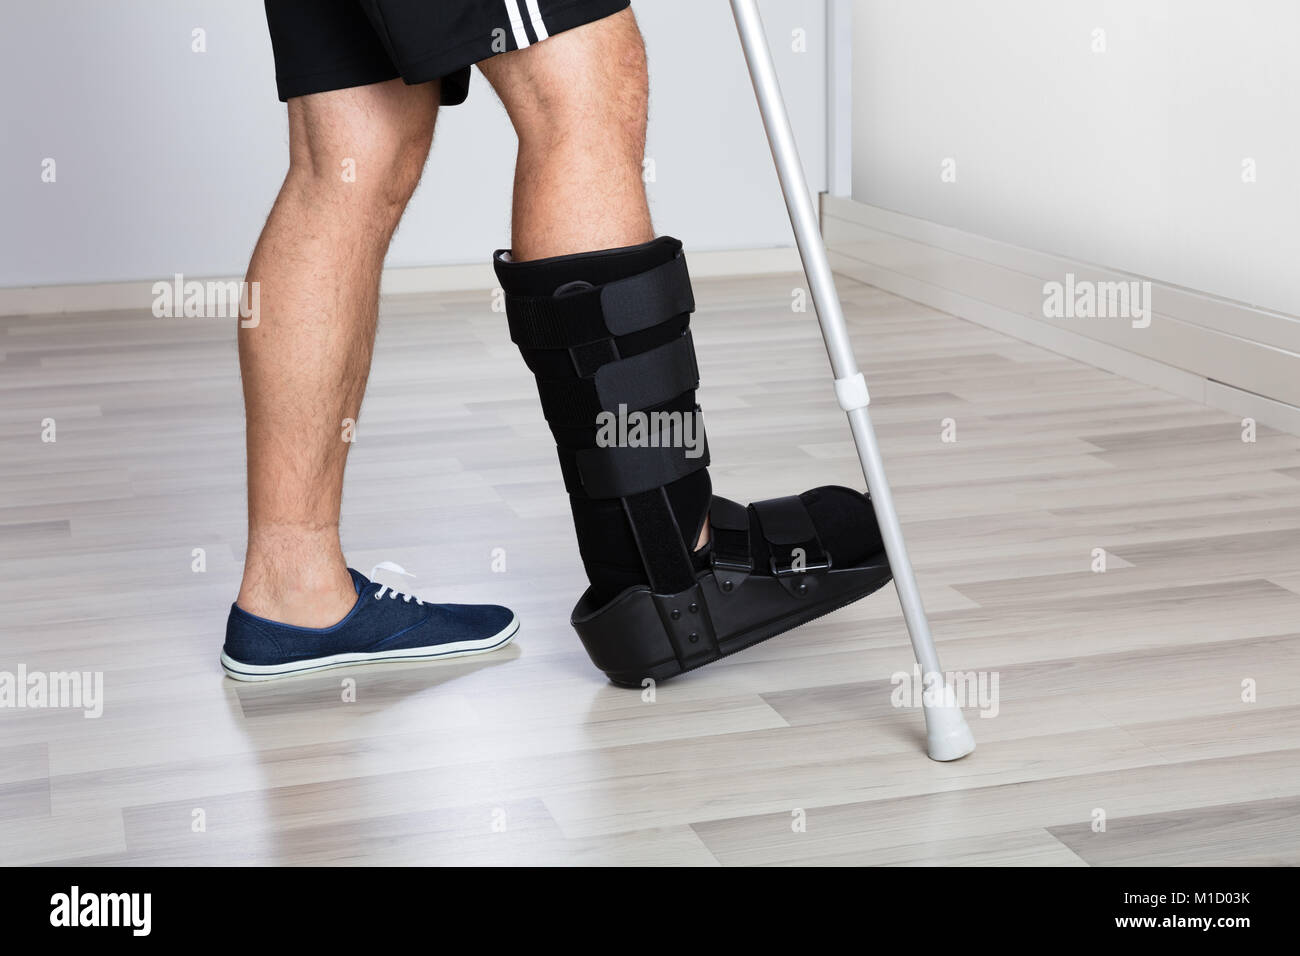 Niedrige Abschnitt Ansicht einer verletzten Person's Bein mit Krücken und Fuß Bandage Stockfoto